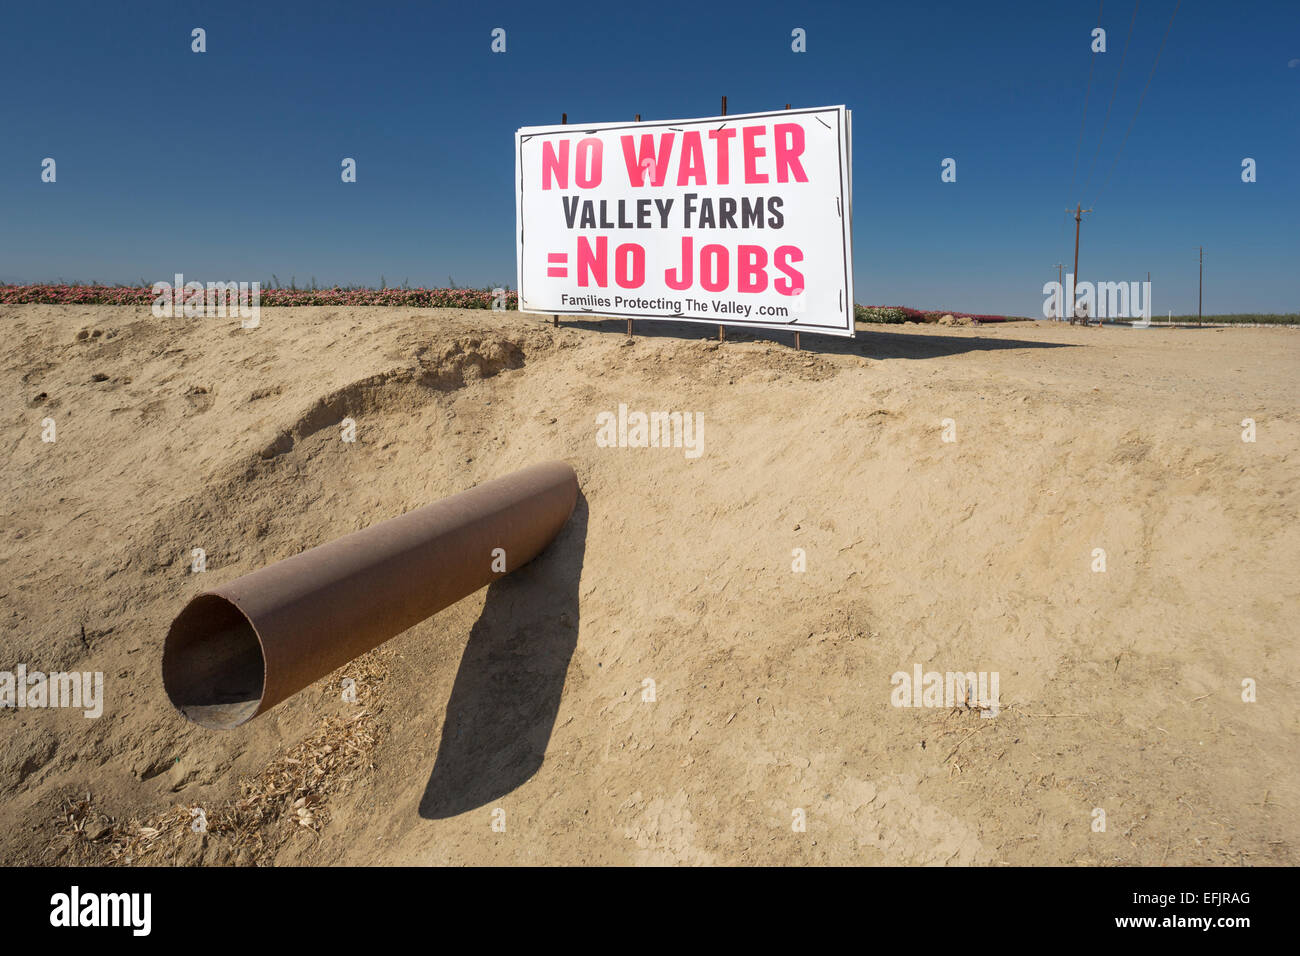 Pas d'eau PAS D'EMPLOIS SIGNER WASCO CENTRAL VALLEY CALIFORNIA USA Banque D'Images